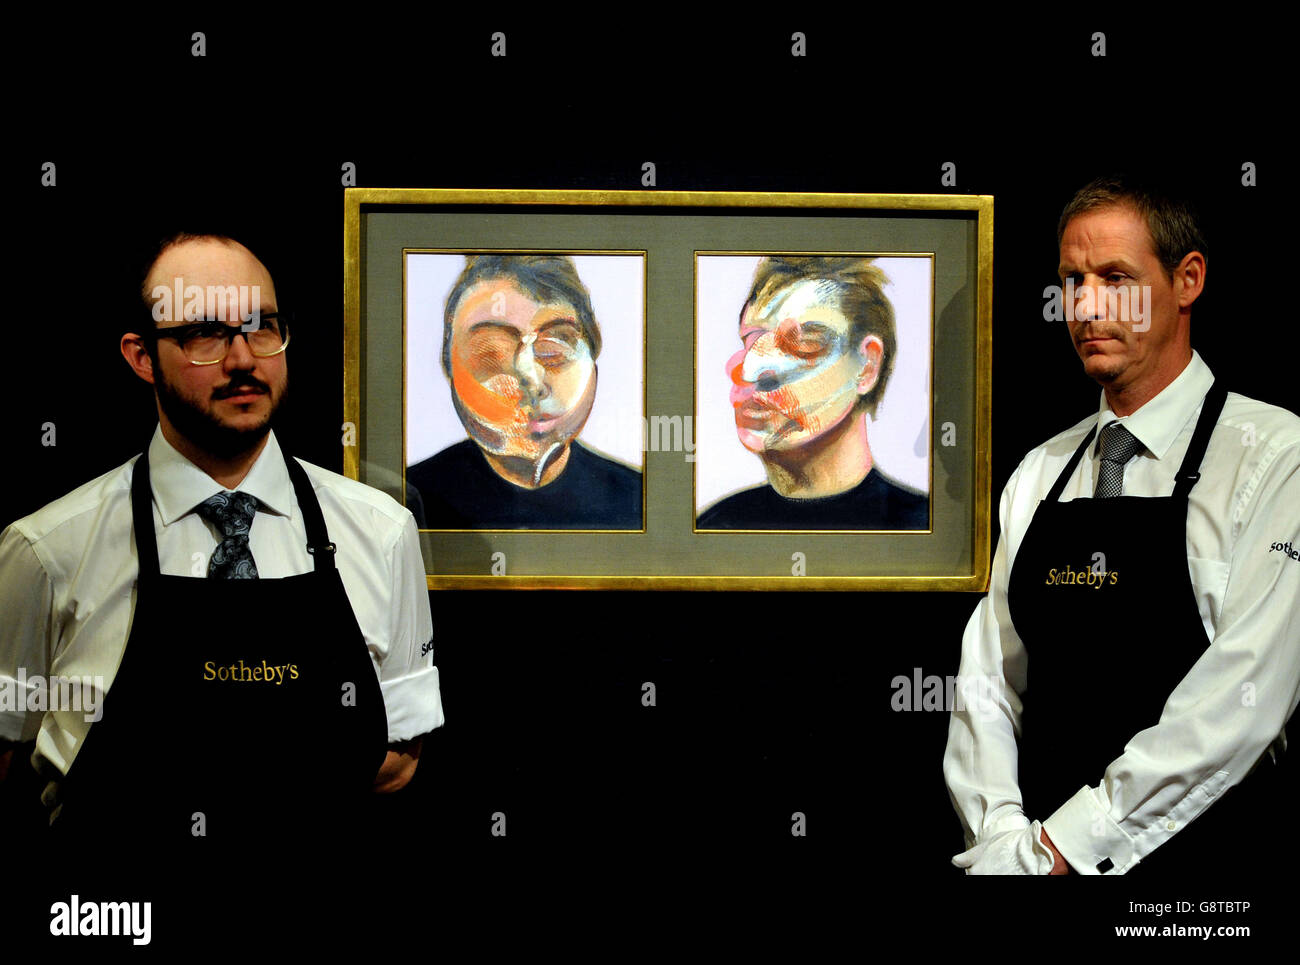 Les techniciens de Sotheby se trouvent à côté de Two Studies for a Self-Portrait, un tableau de Francis Bacon de 1970 estimé à 22-30 millions de dollars, lors d'un aperçu de la vente d'art du XXe siècle à Sotheby's dans le centre de Londres. Banque D'Images